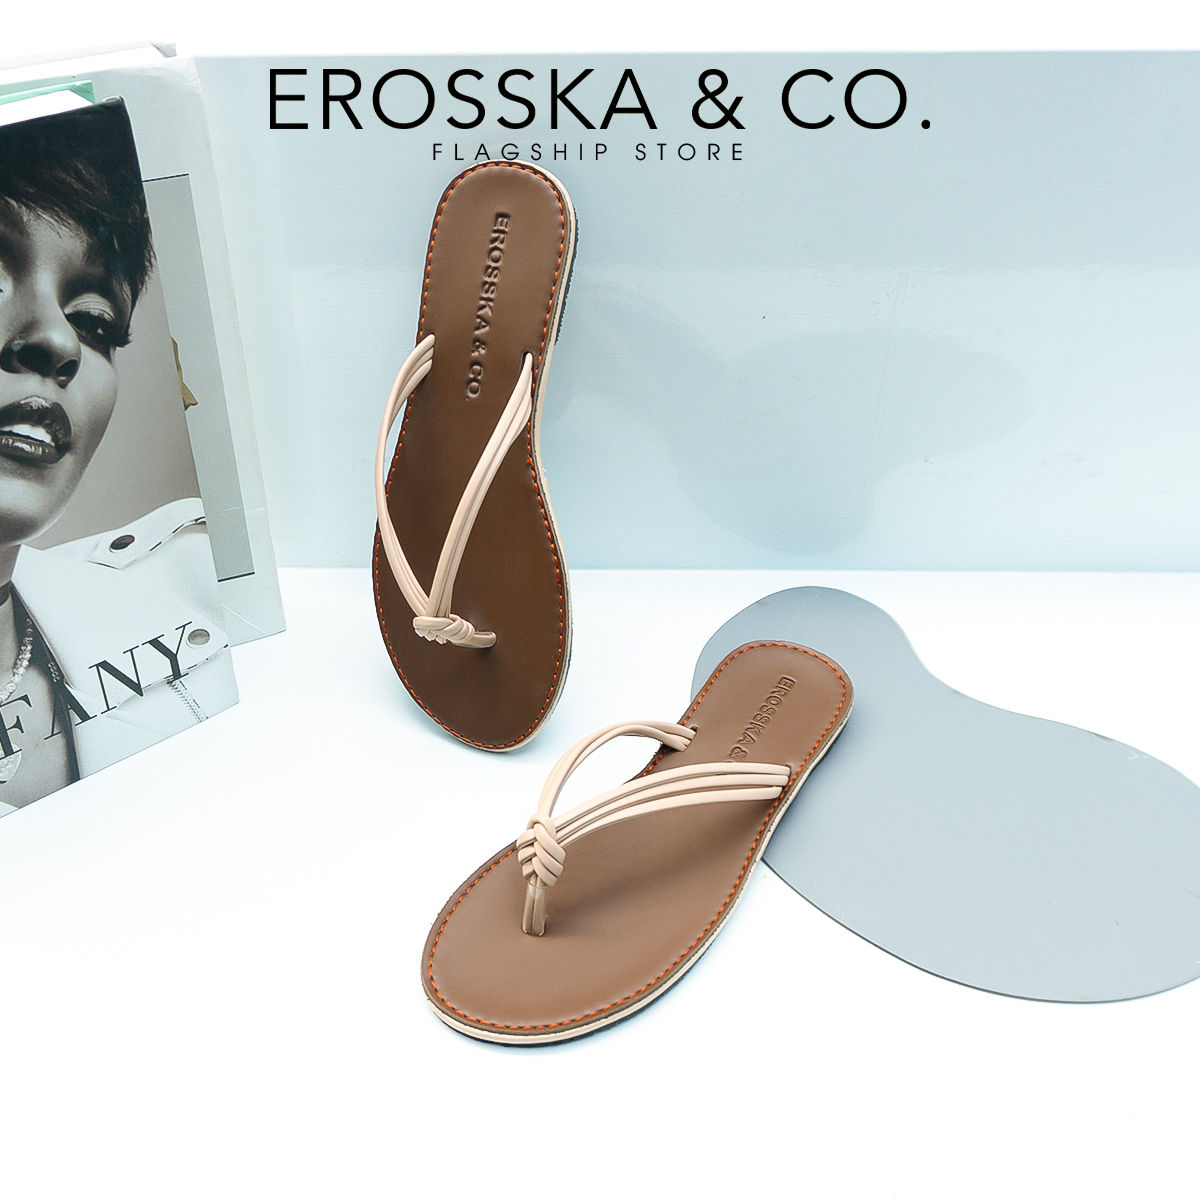 Dép đi biển thời trang Erosska 2021 xỏ ngón đế bệt DE048